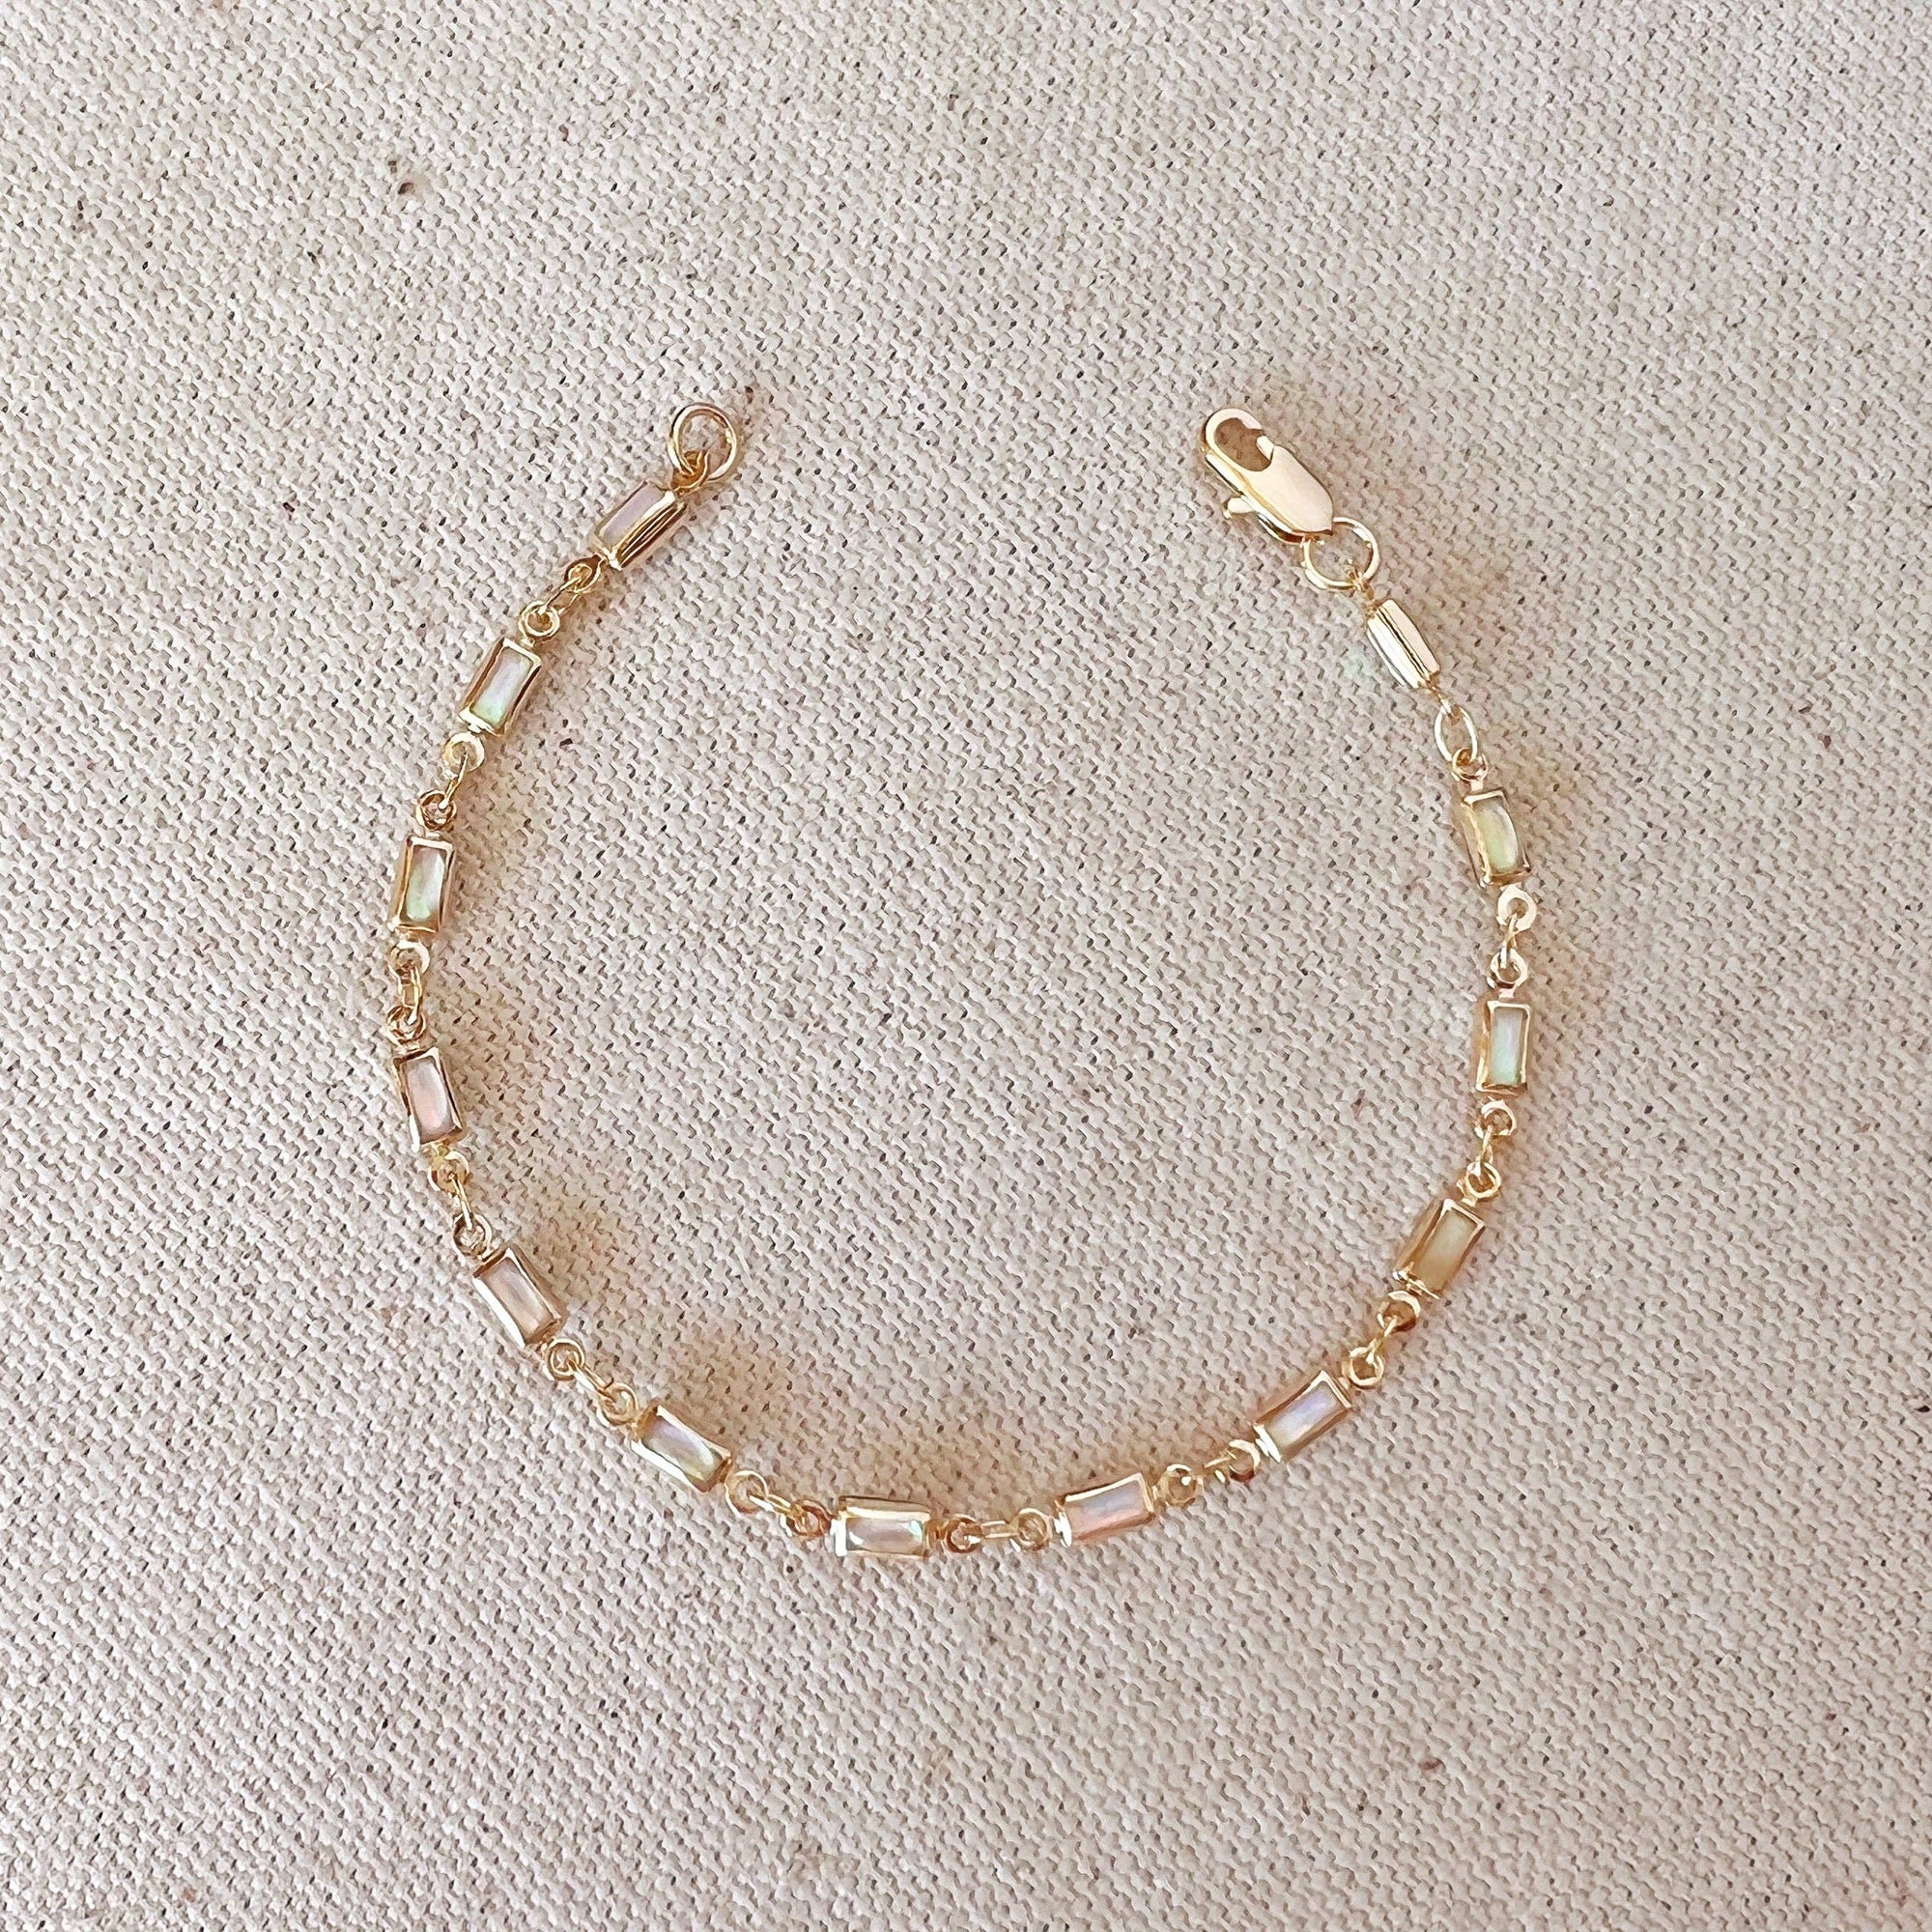 Opal Bracelet, 18k Gold Filled